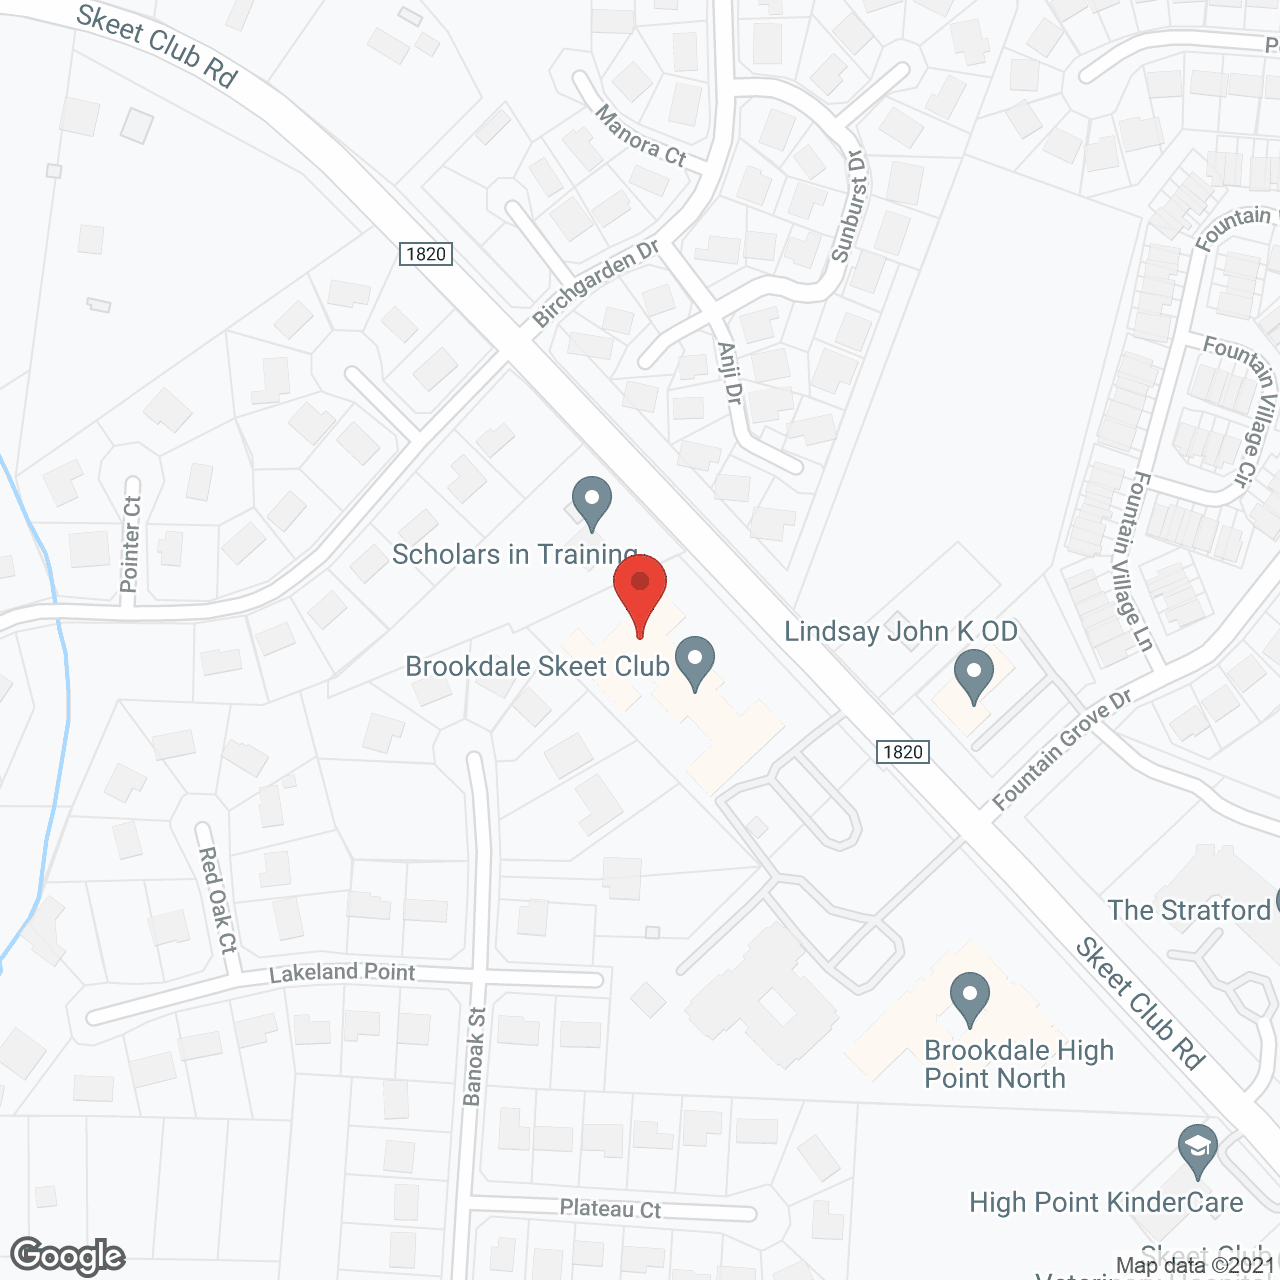 Brookdale Skeet Club in google map